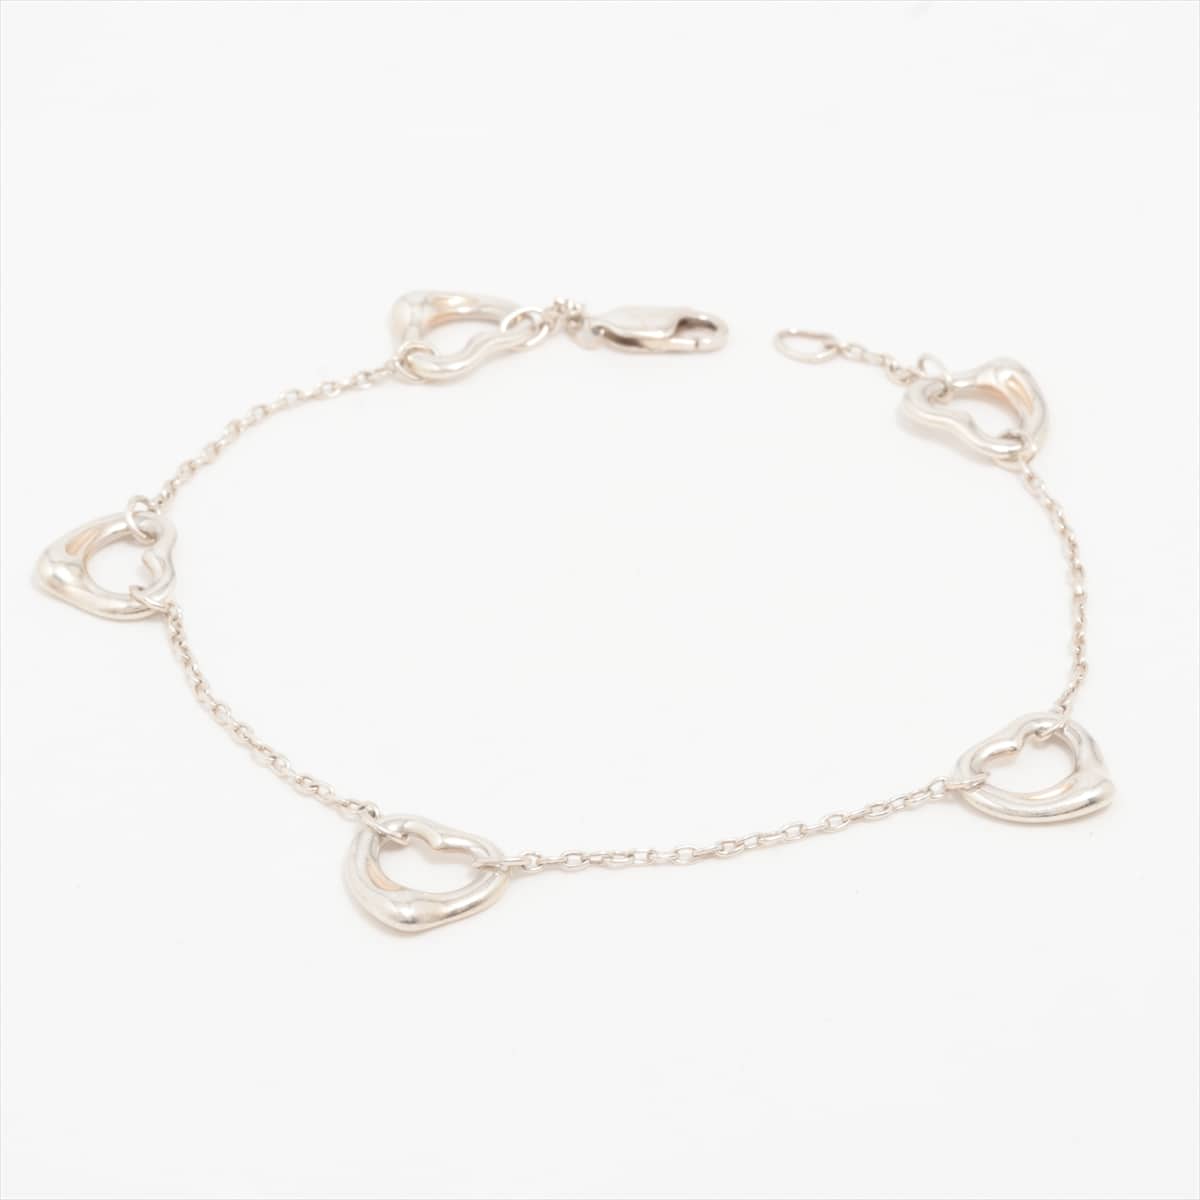 Tiffany Open Heart Bracelet 925 4.8g Silver